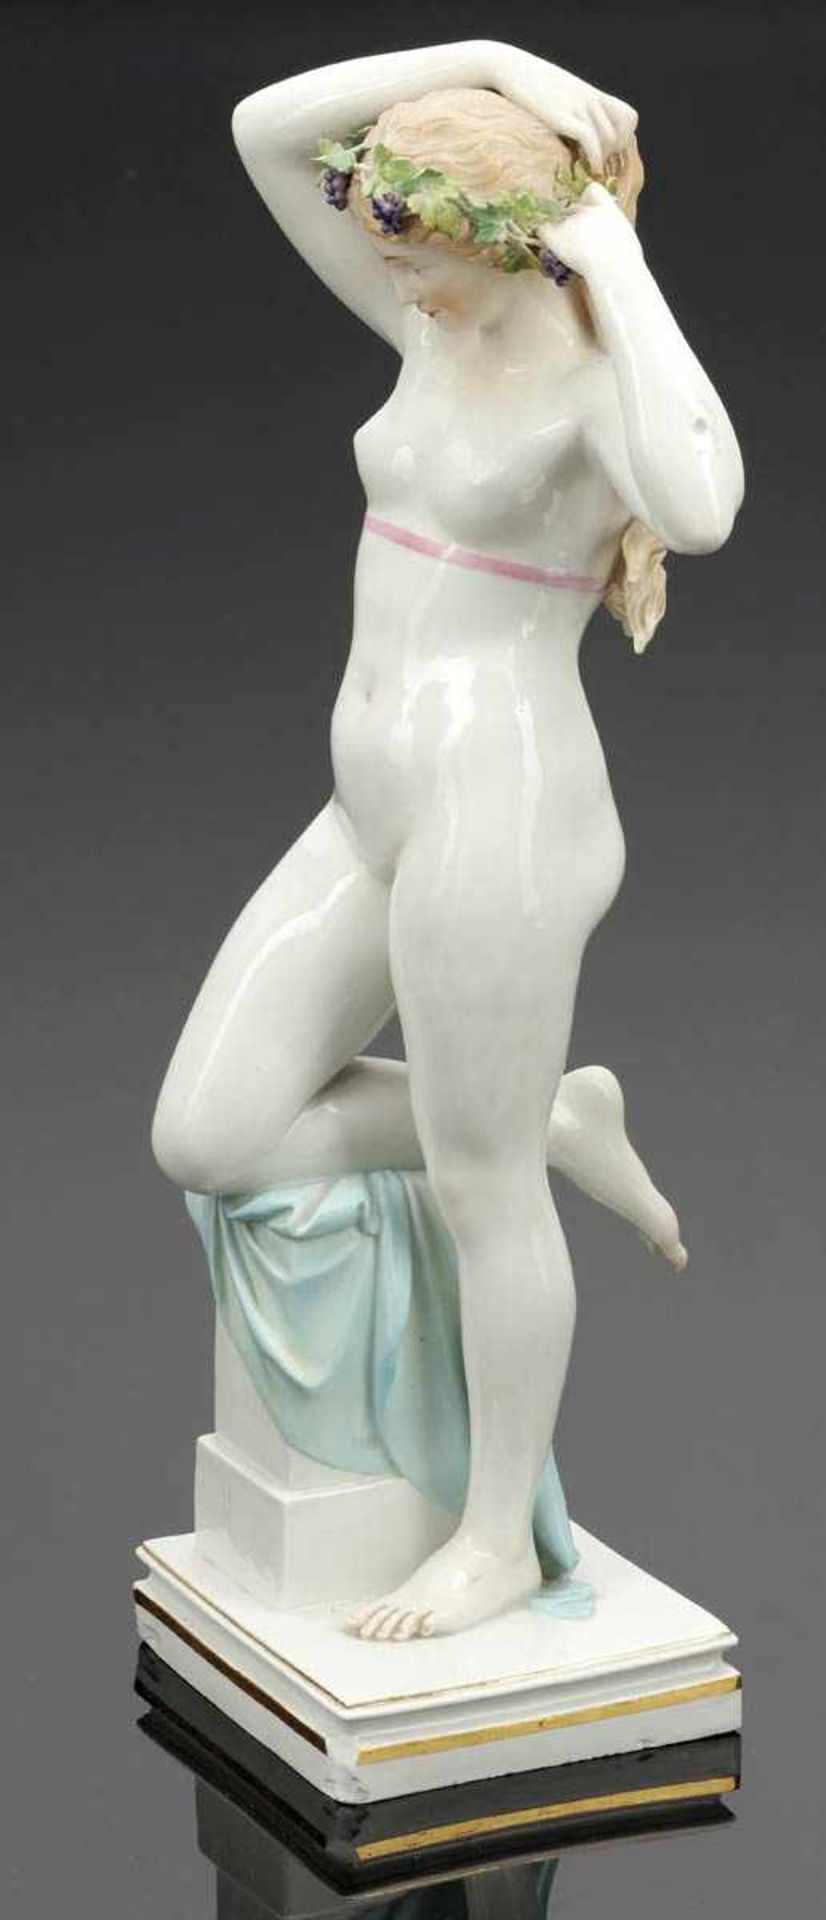 Figur Bacchantin Königliche Porzellan Manufaktur, Meissen 1877-1880. Porzellan, weiß, glasiert.